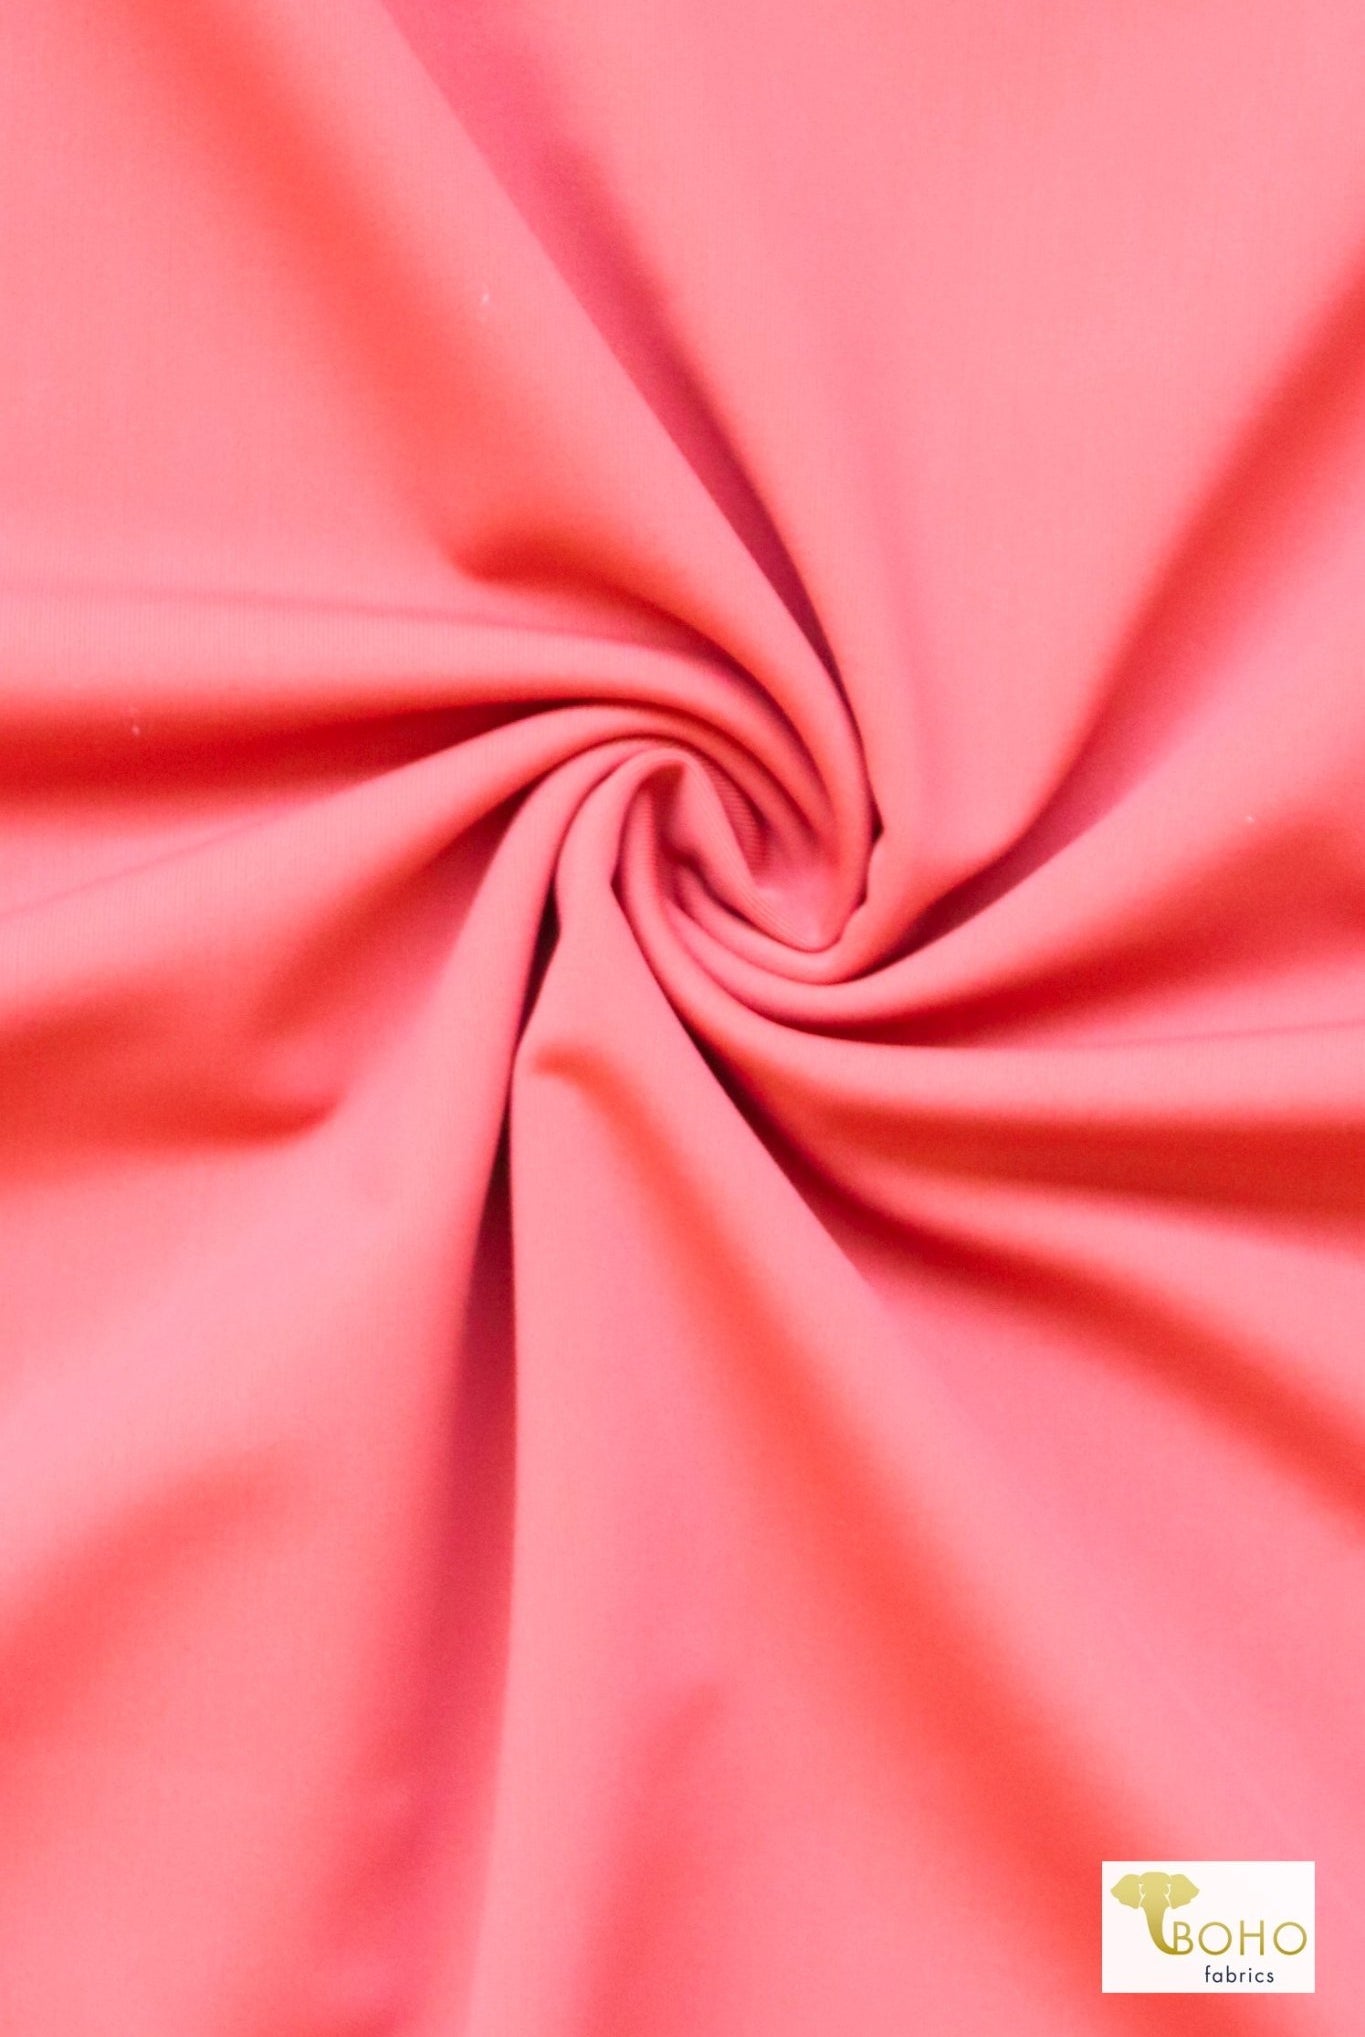 Salmon Pink, Solid Swim Knit Fabric. - Boho Fabrics